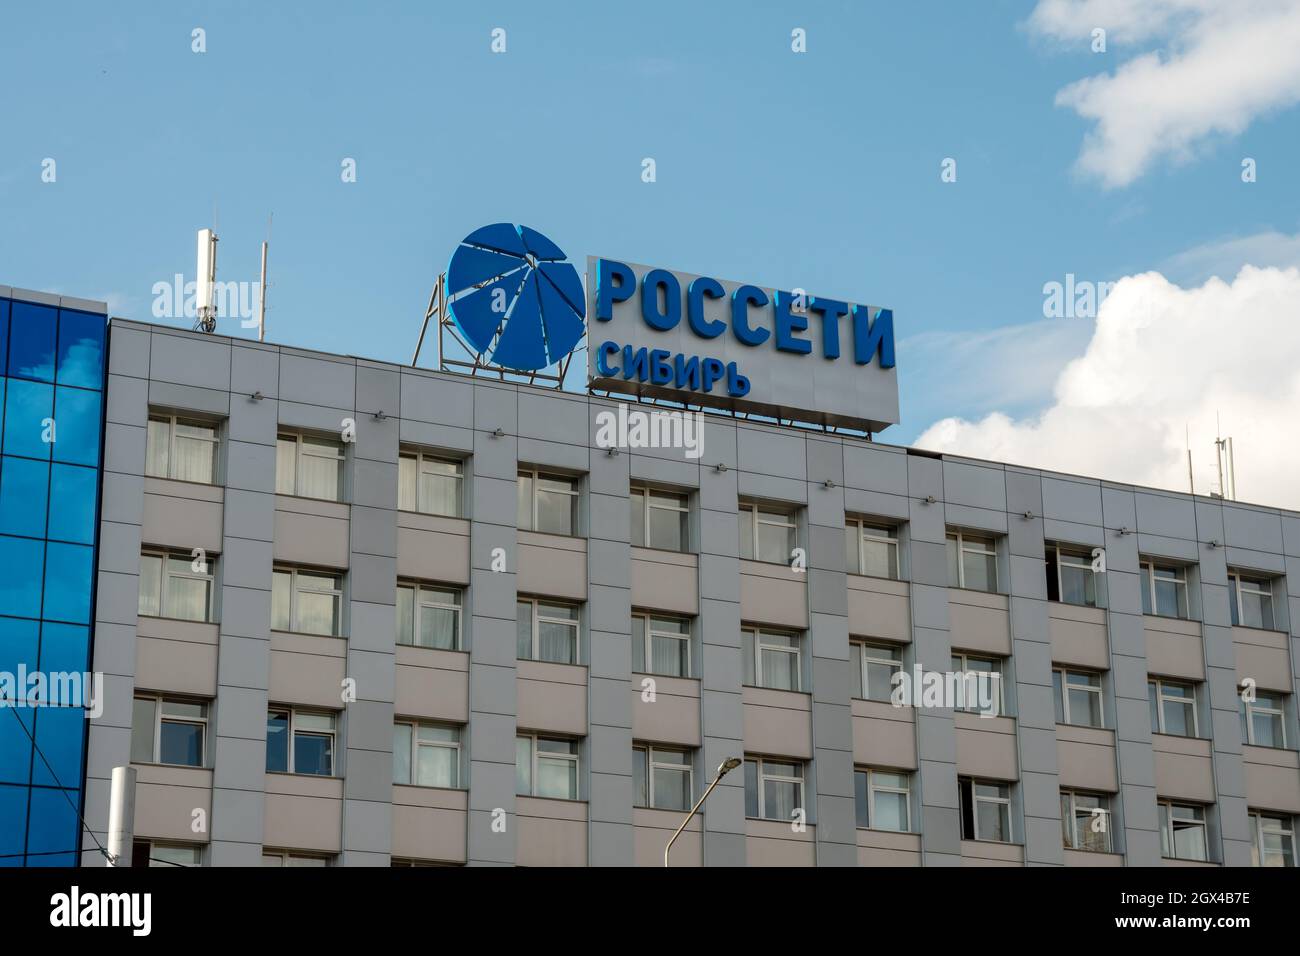 Das Logo und der Name in russischer Sprache des Unternehmens - Rosseti Sibirien - Durchführung der Übertragung und Verteilung der elektrischen Energie auf dem Dach Stockfoto